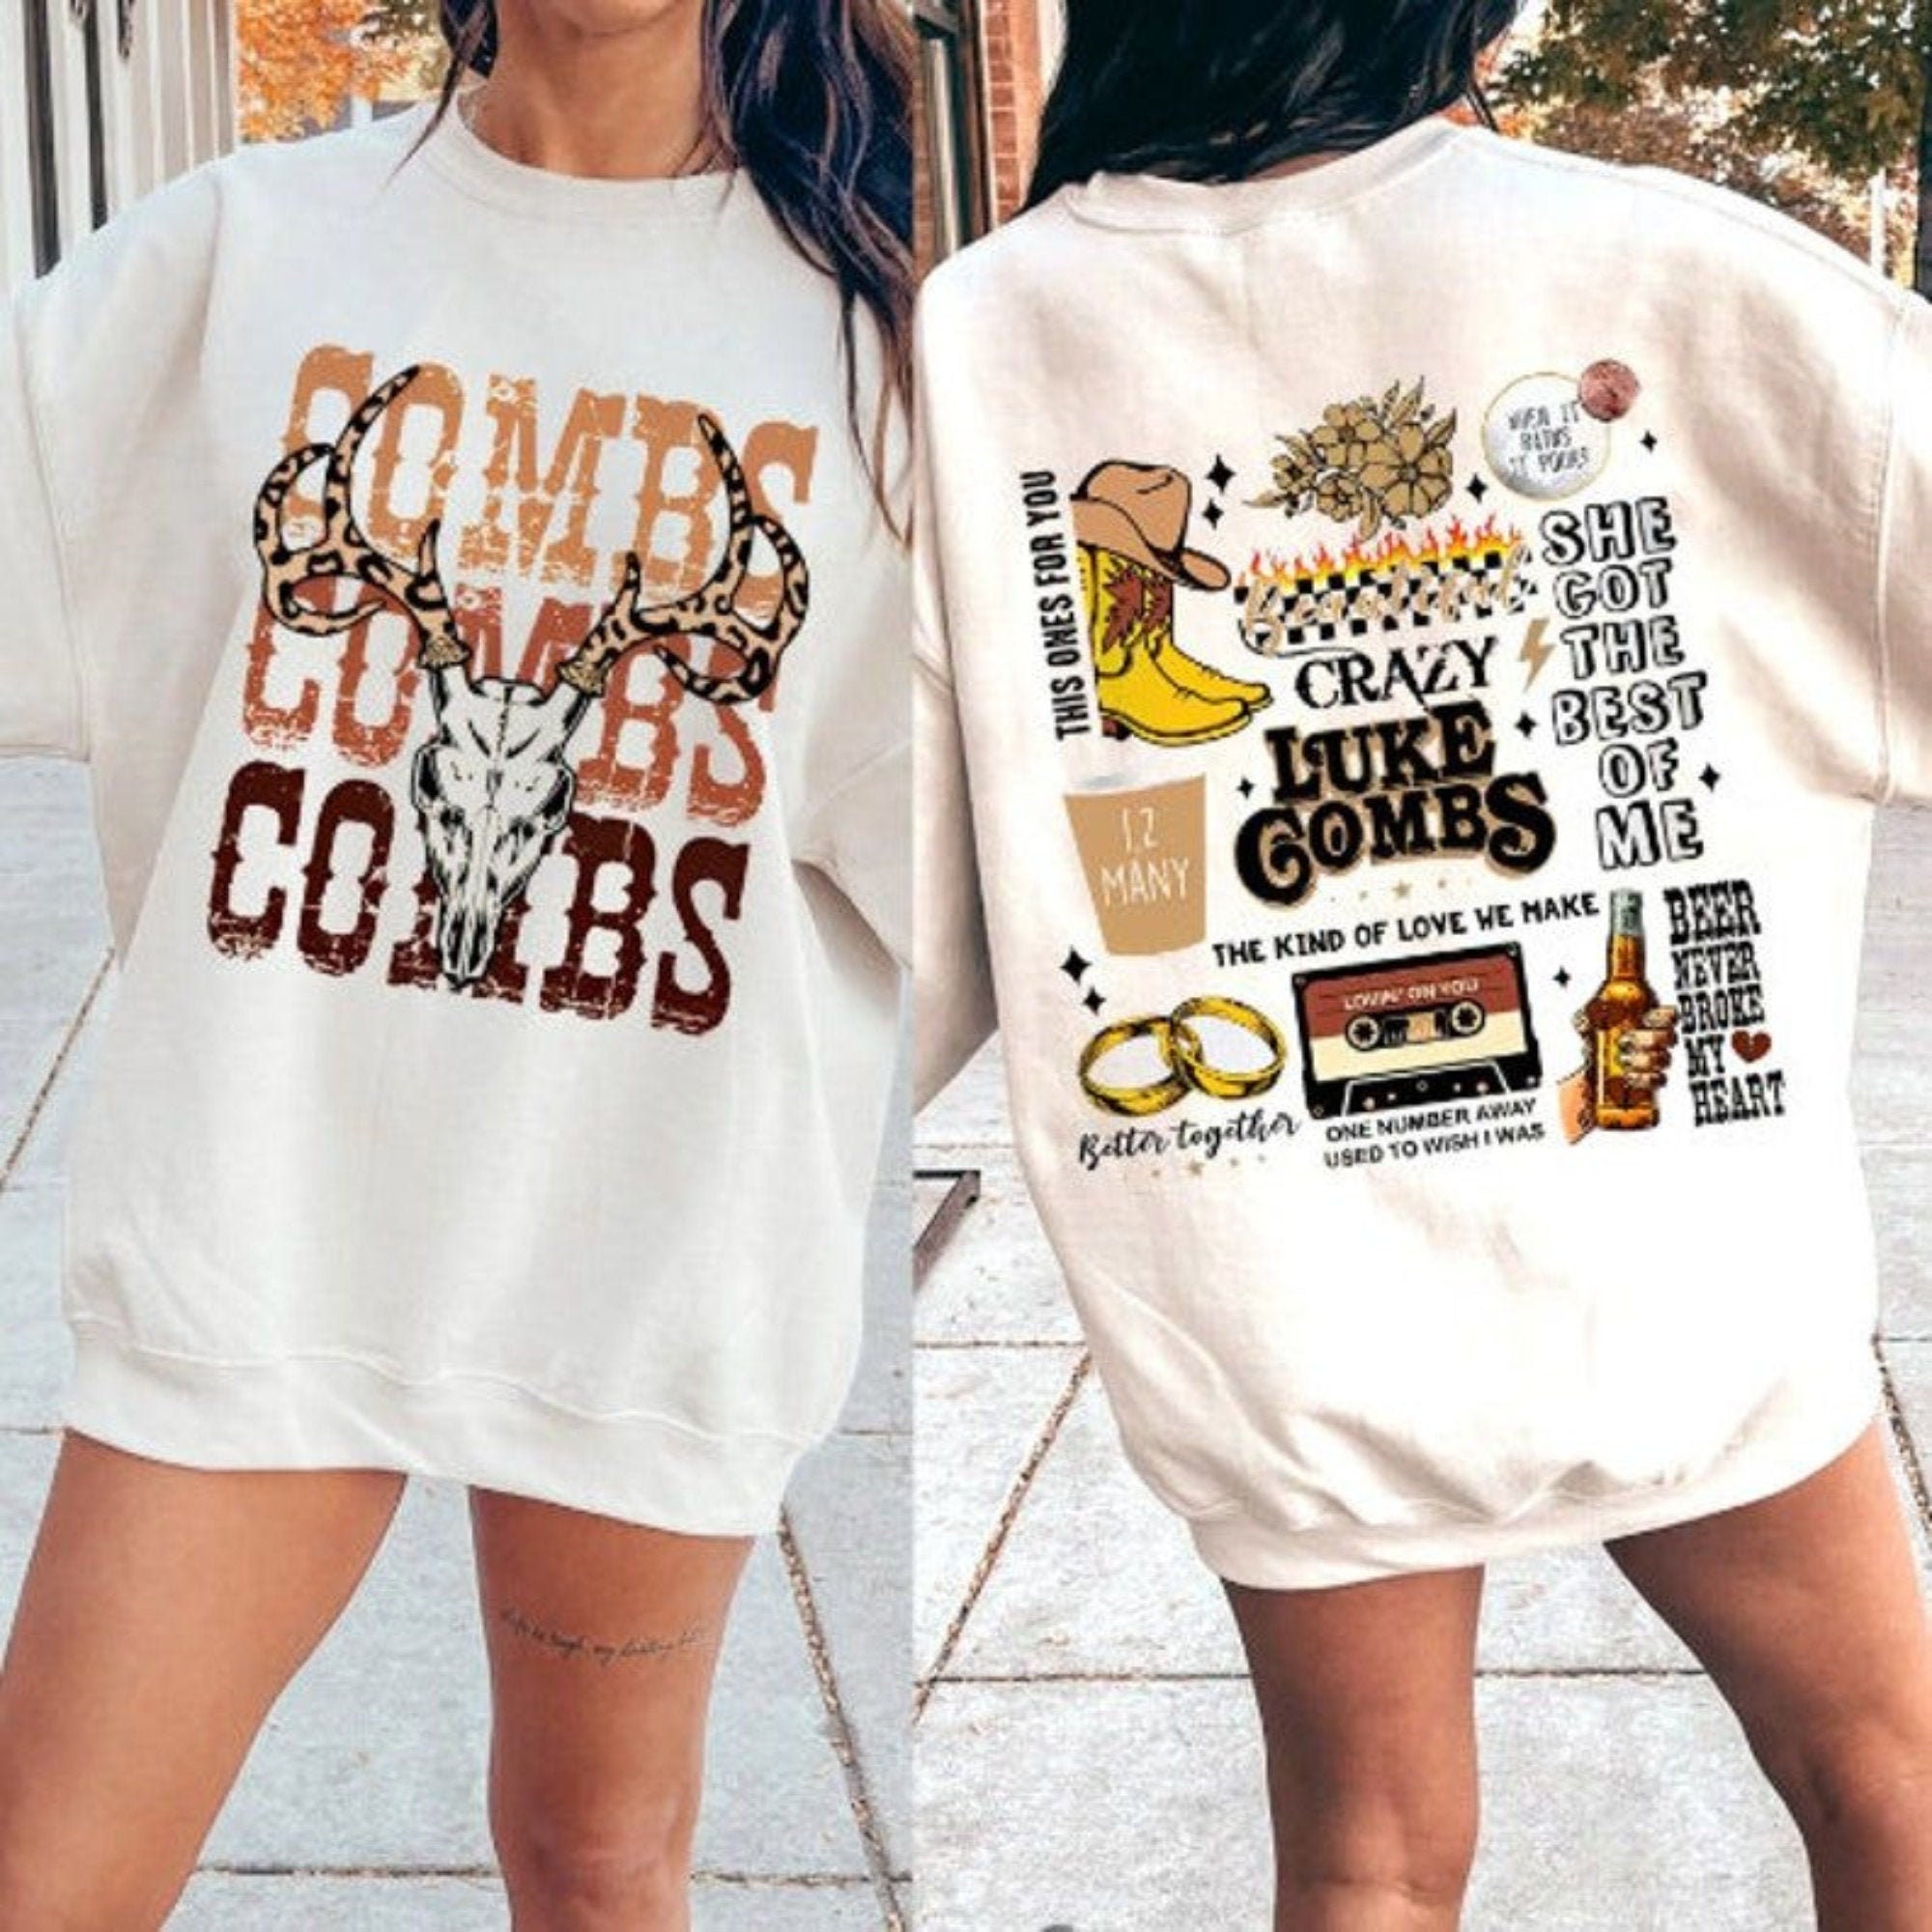 Lukee Comb Shirt , Lukee Comb merch shirt , Lukee Comb Concert